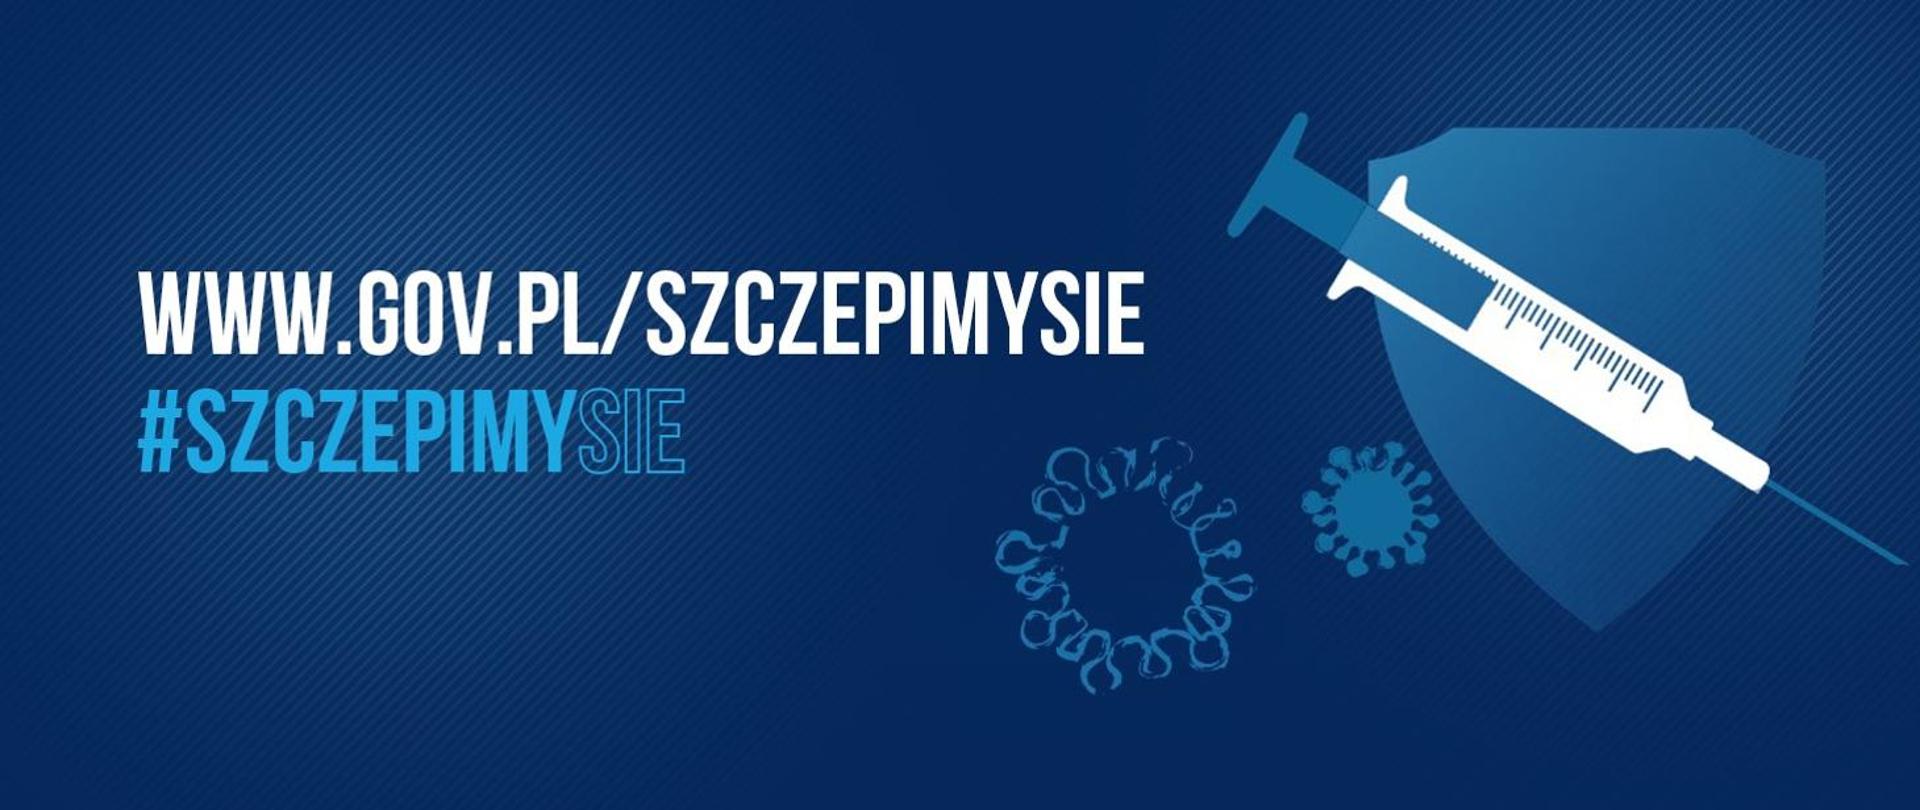 www.gov.pl/szczepimy się #szczepimysie. Rysunek strzykawki i koronawirusa